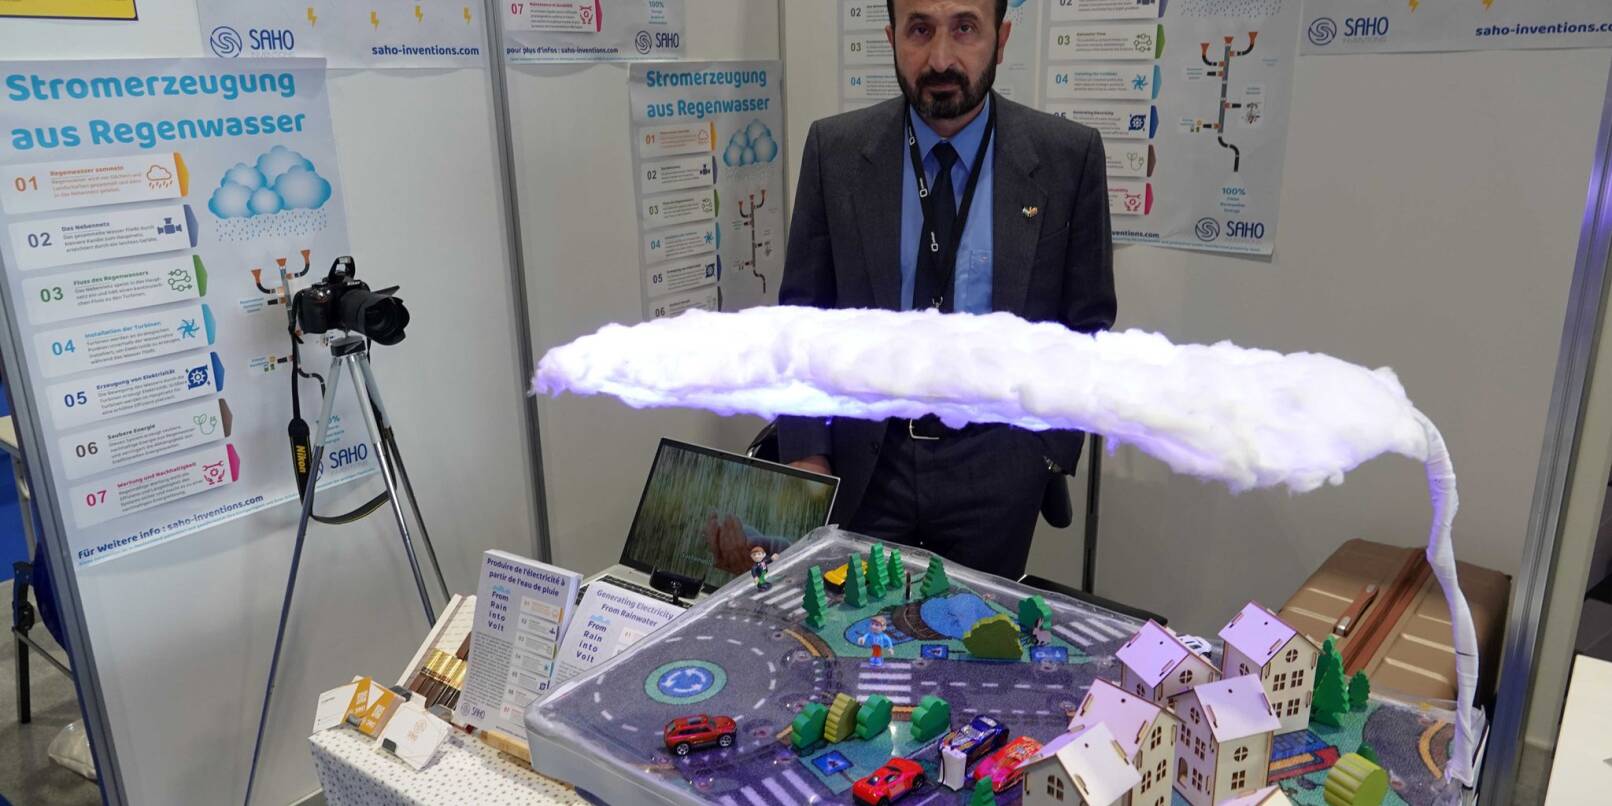 Khaled Al-Saho steht hinter seinem Modell, das die Produktion von Energie aus Regenwasser erklärt.